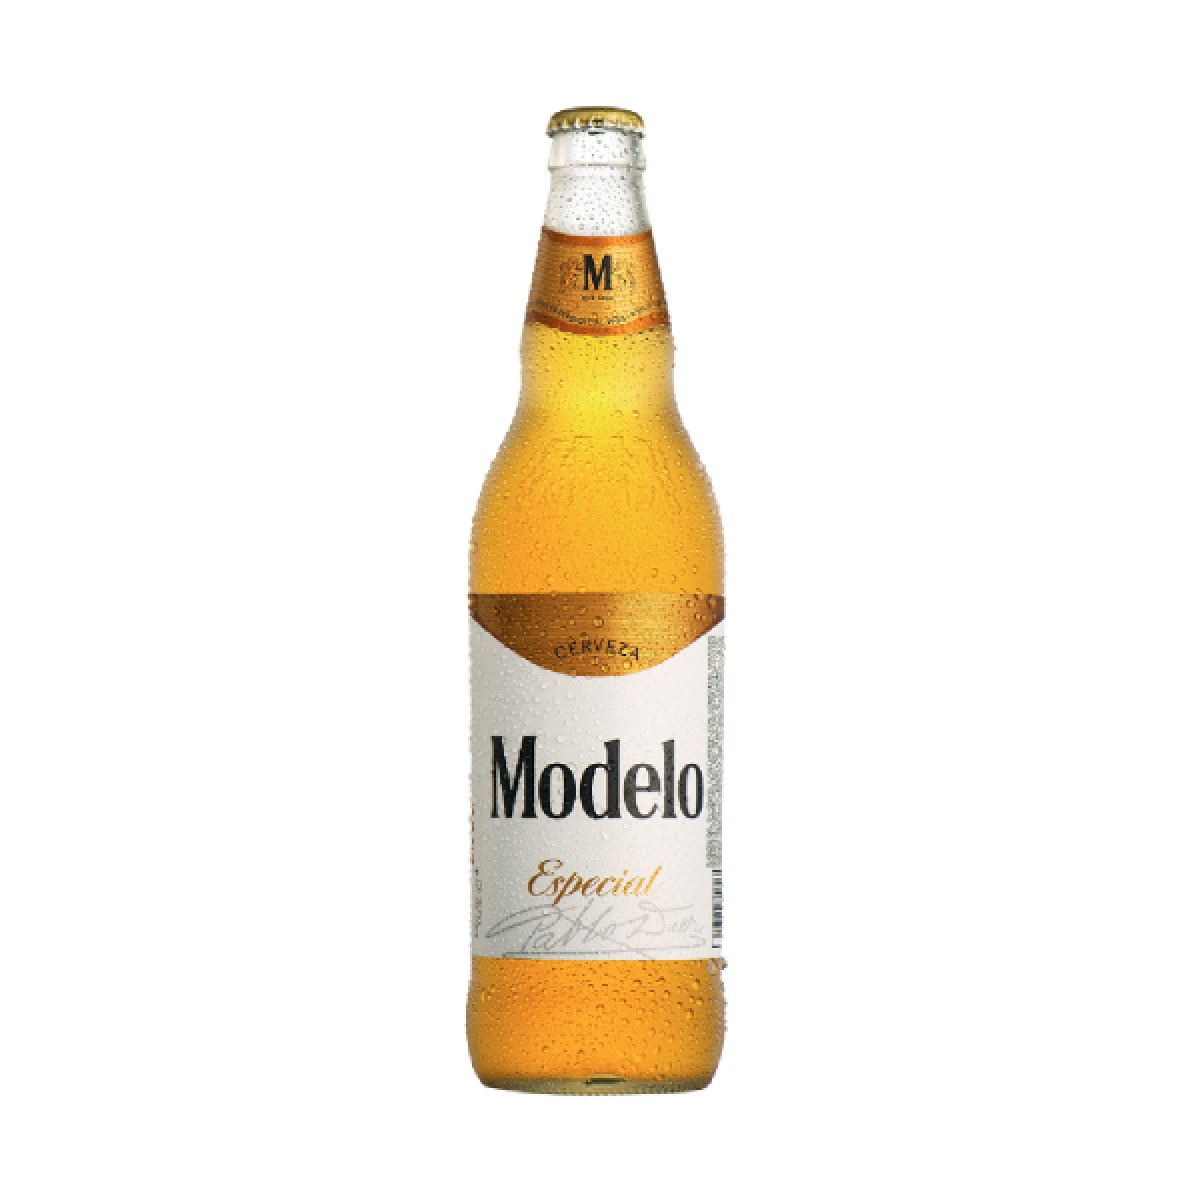 Modelo Especial Cerveza - Bebidas RD